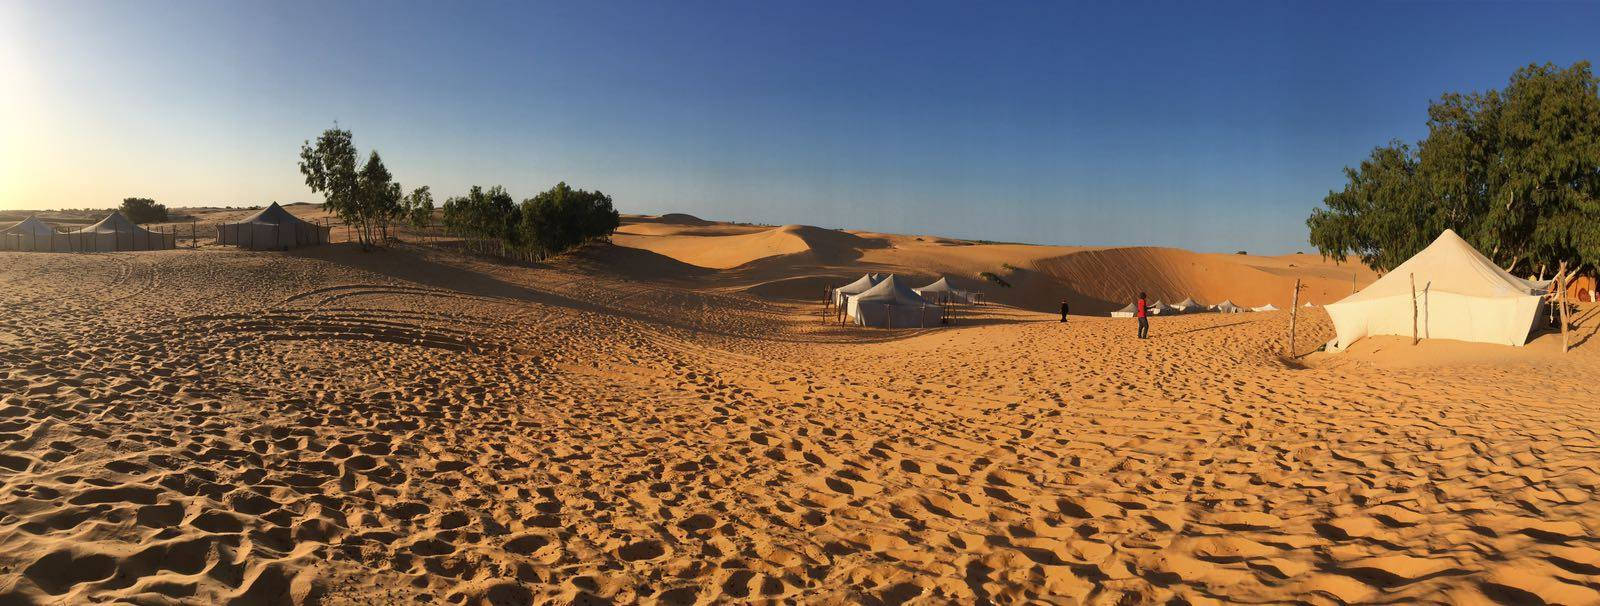 Mauritanischeszelt In Der Wüste Wallpaper